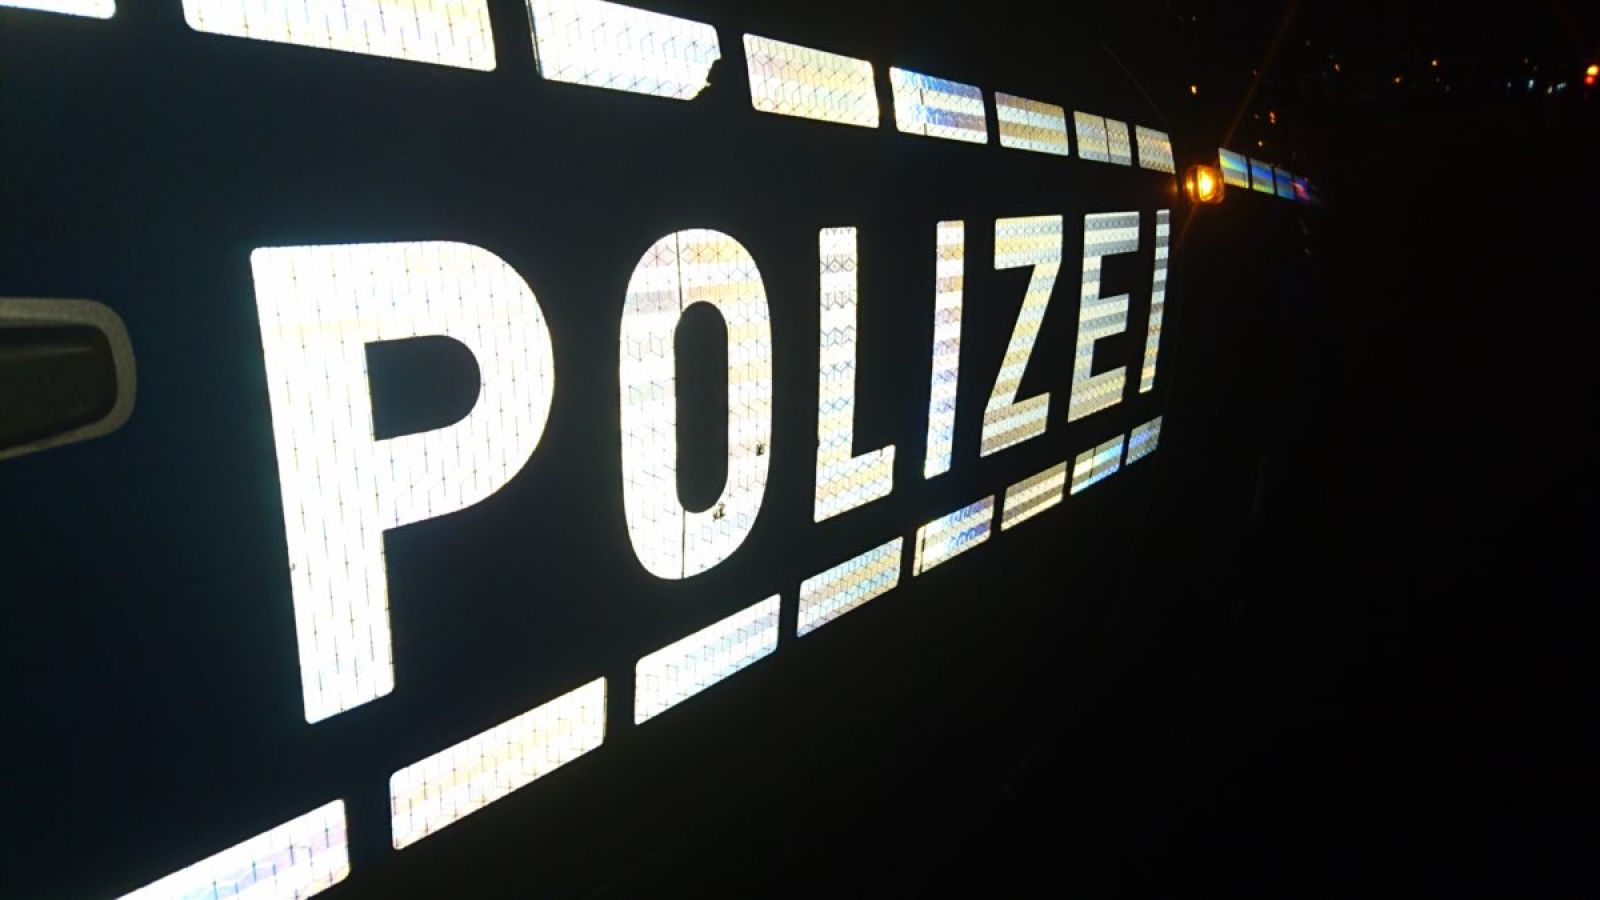 Unfall mit drei Beteiligen Fahrzeugen in Mainz im Berufsverkehr